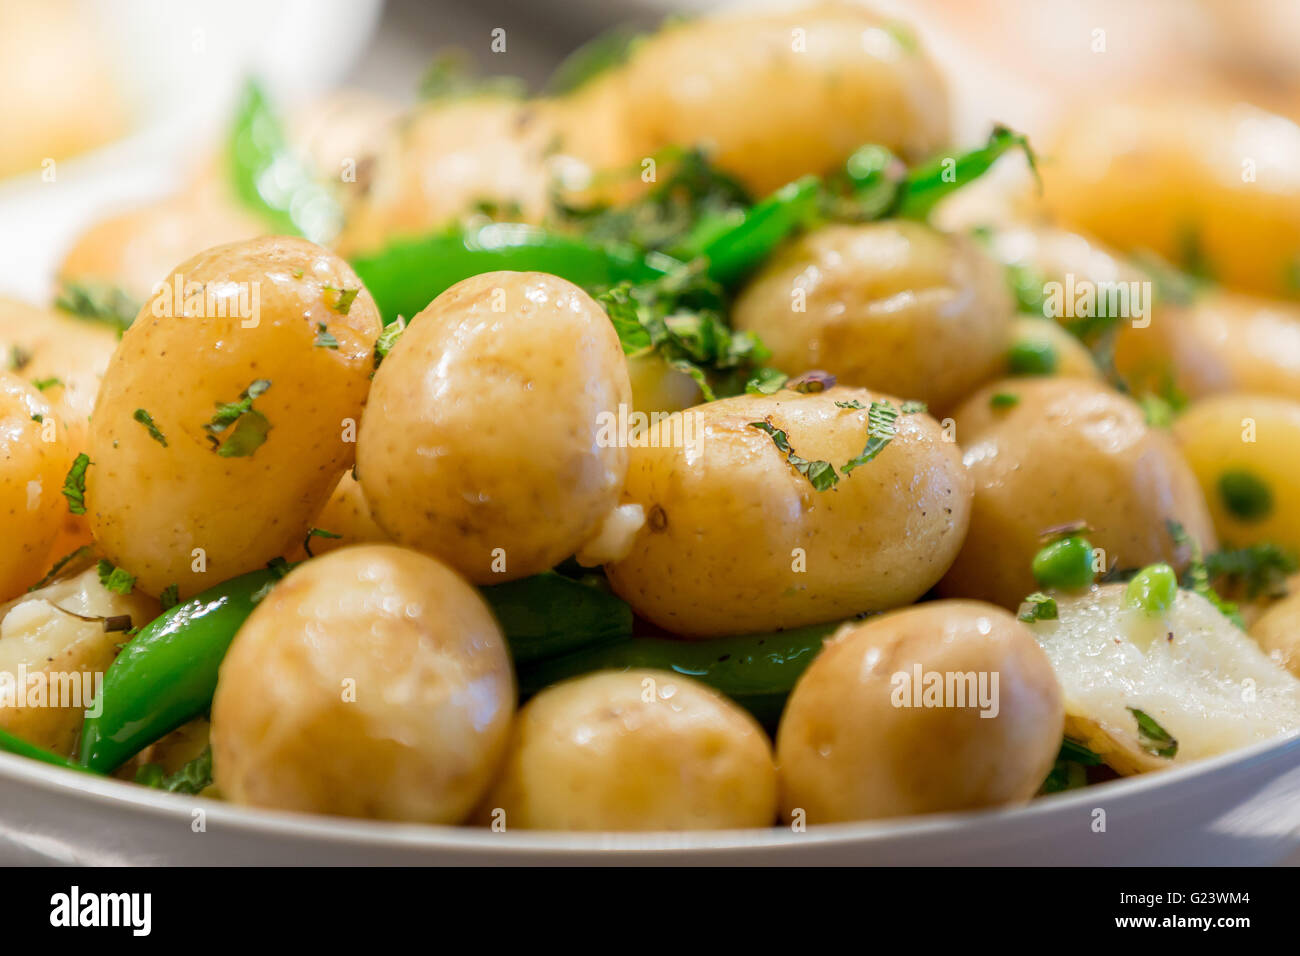 Hot buttered bébé pommes de terre nouvelles dans les herbes Banque D'Images